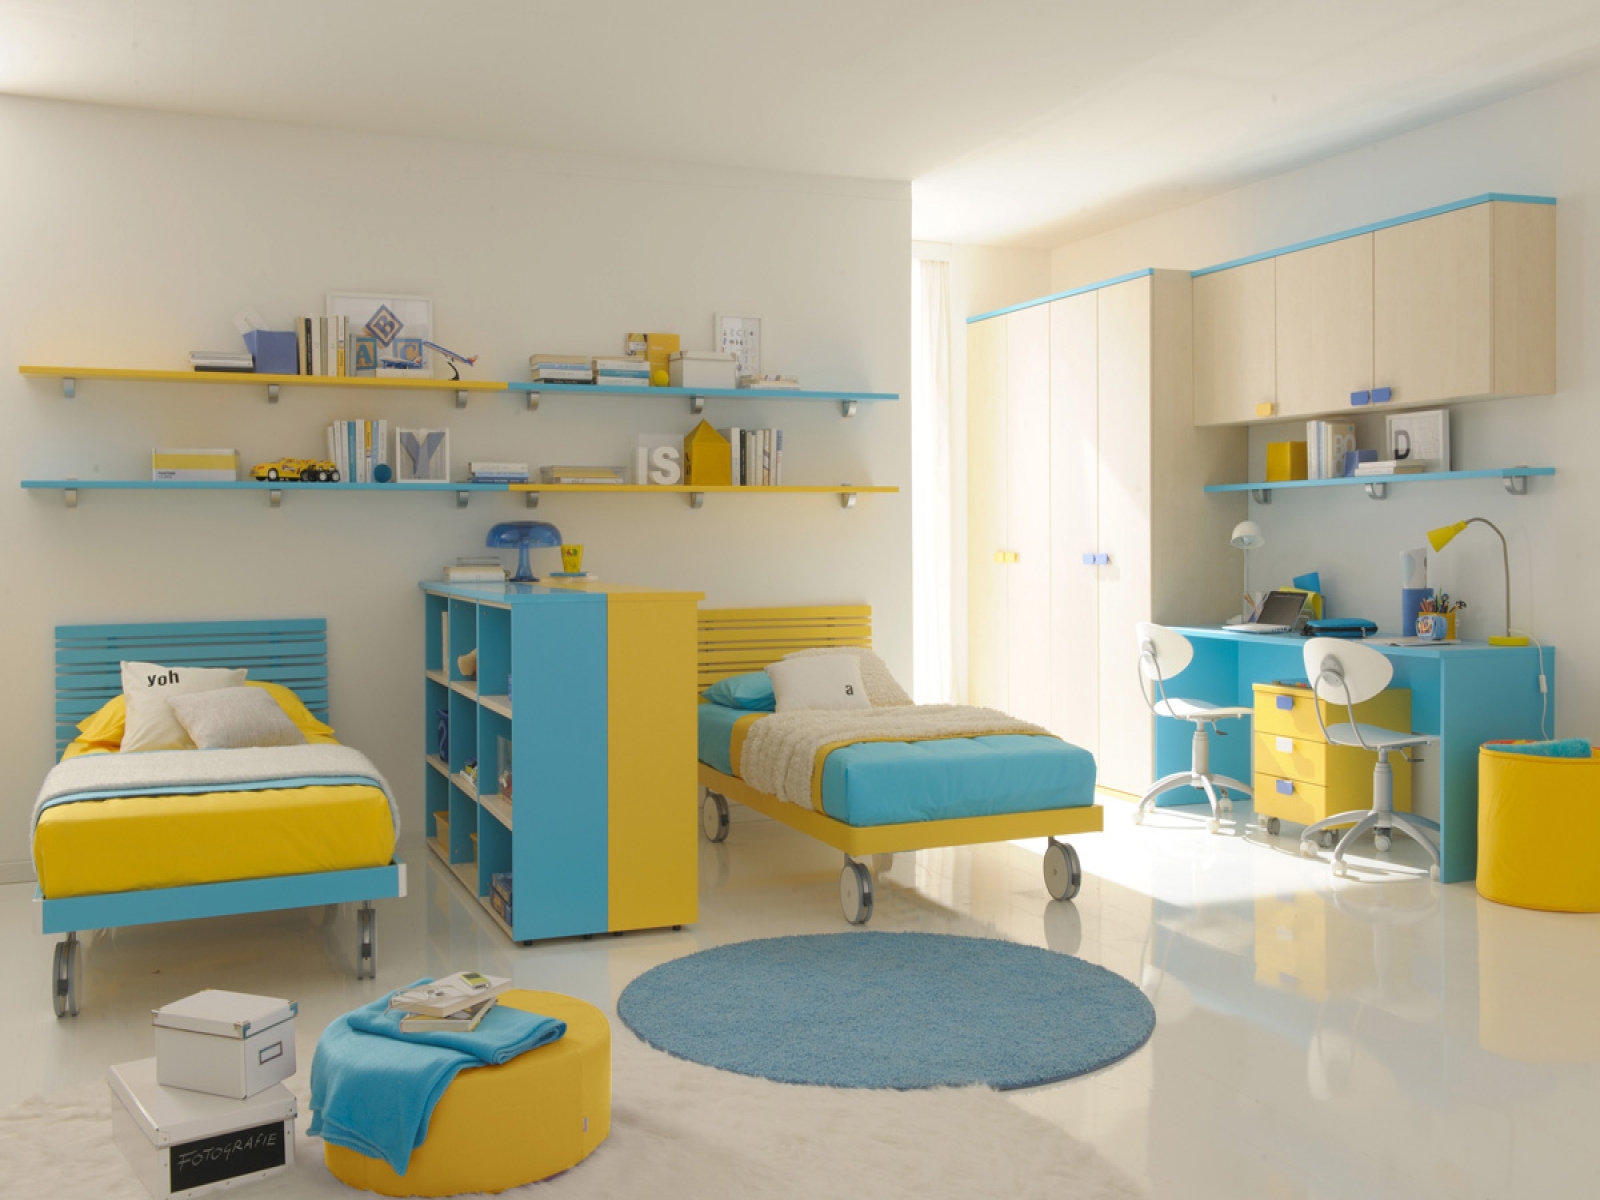 Дизайн детской комнаты для двух мальчиков с кроватью на колесиках